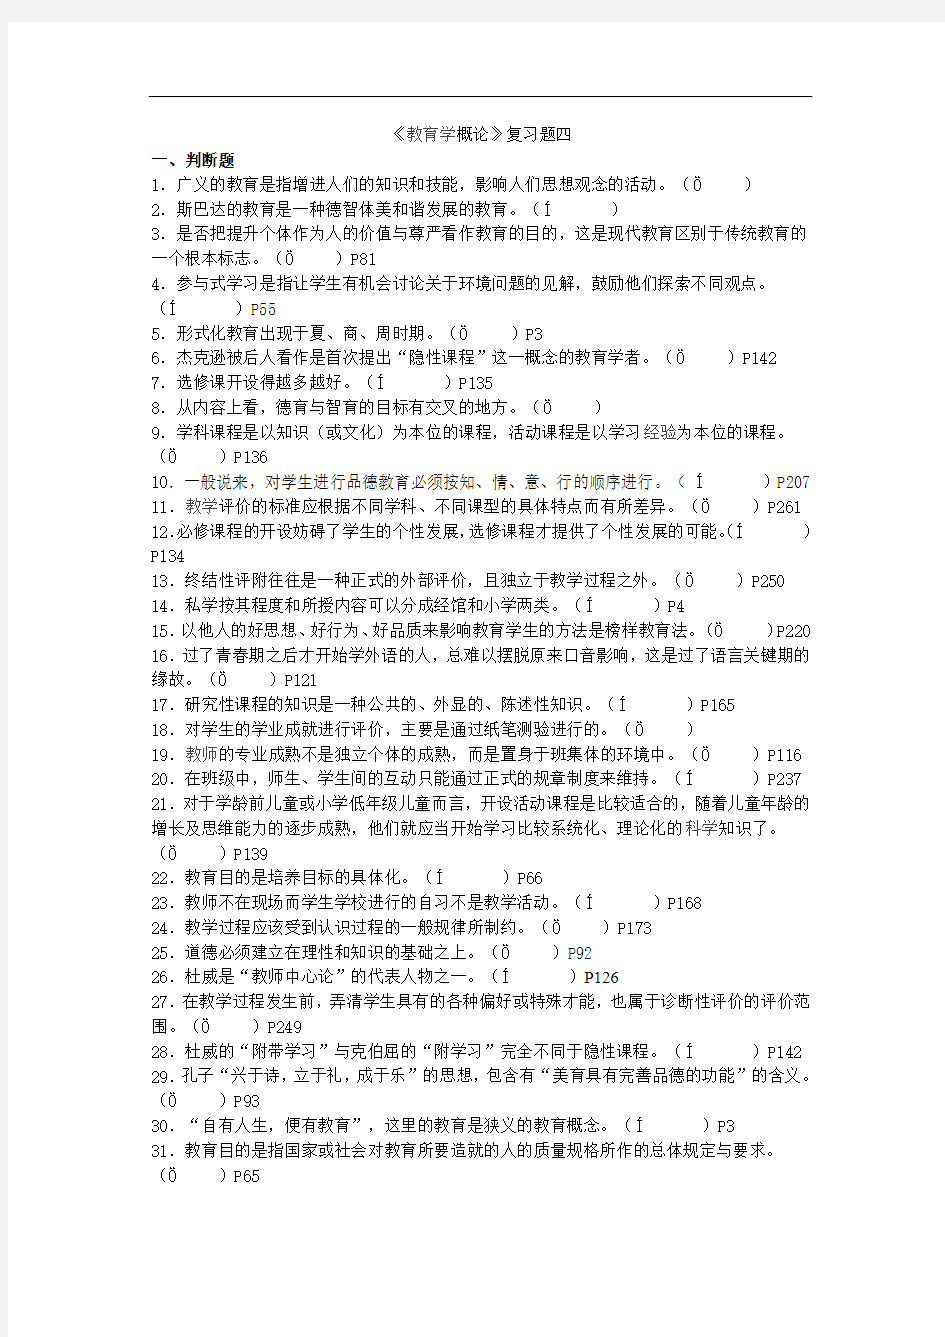 2014年福建省教师招聘考试教育综合--模拟题及答案解析 (14)